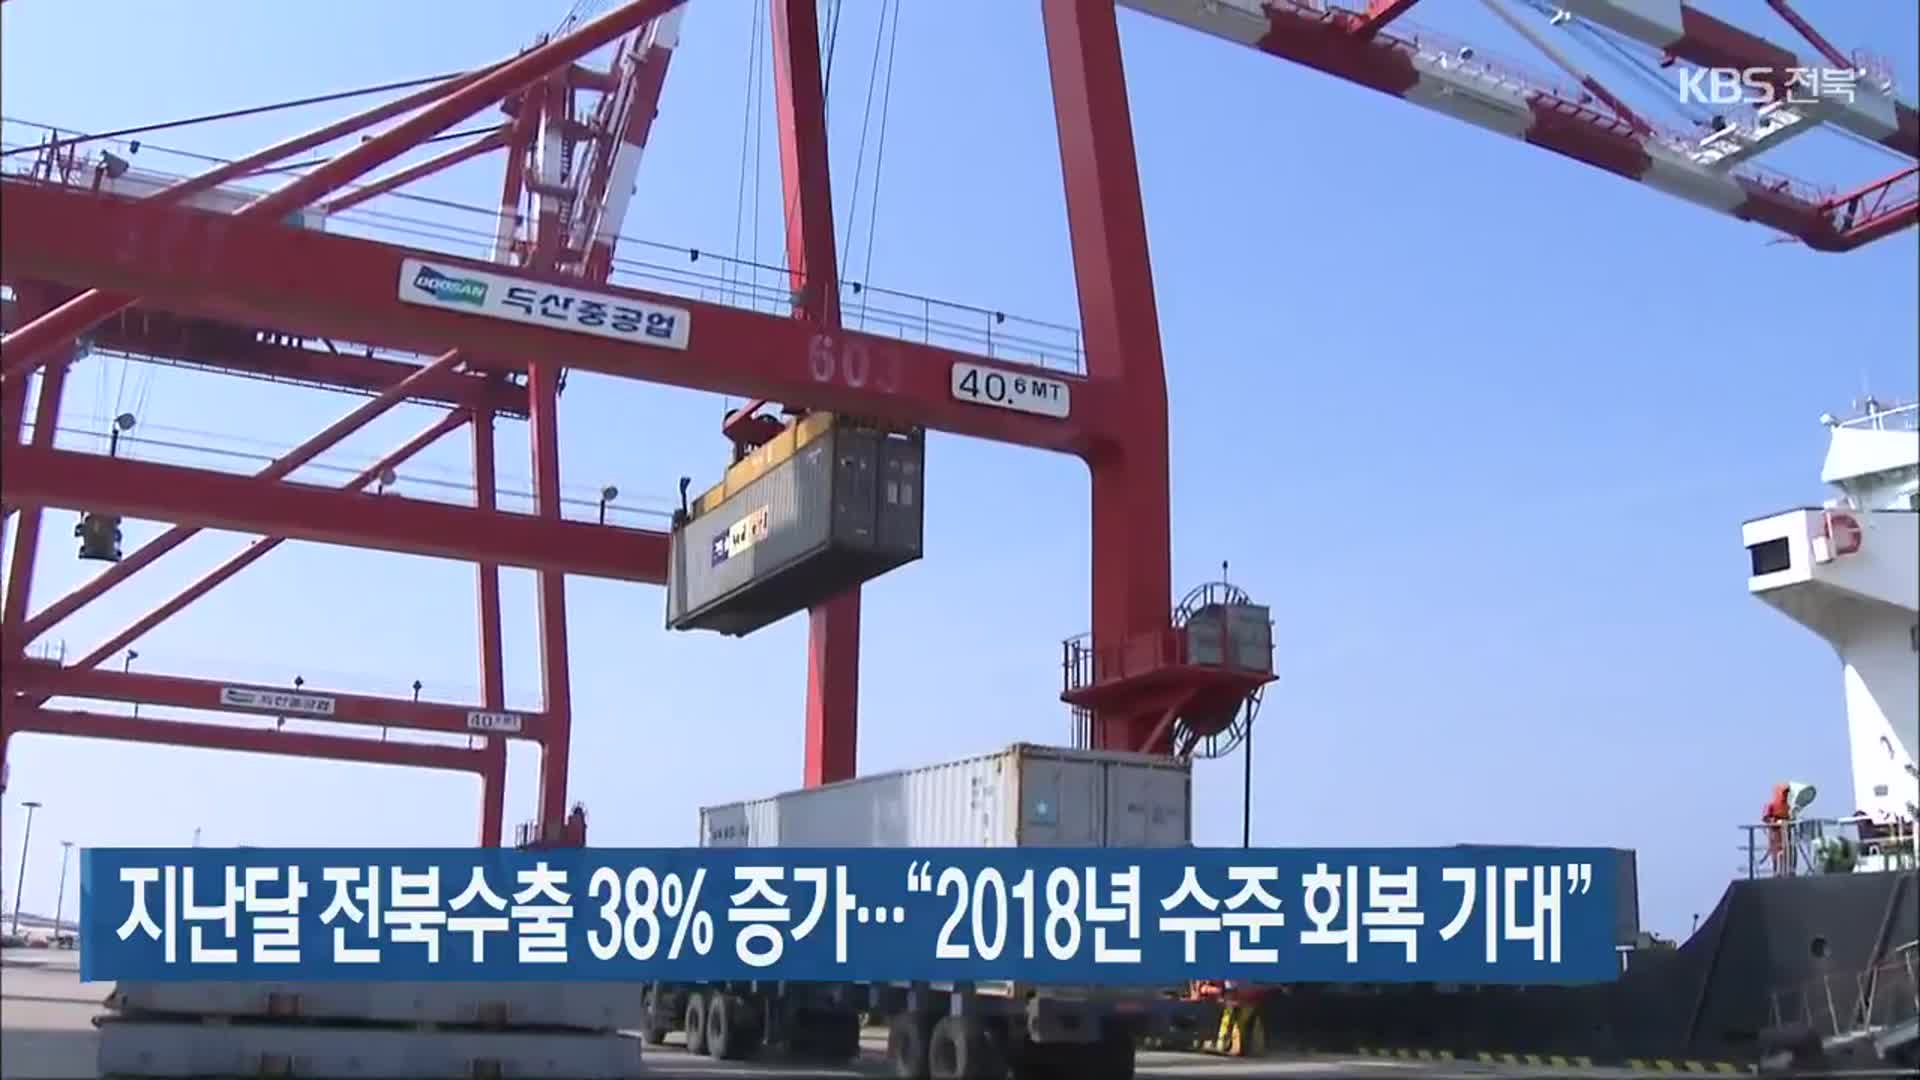 지난달 전북 수출 38% 증가…“2018년 수준 회복 기대”